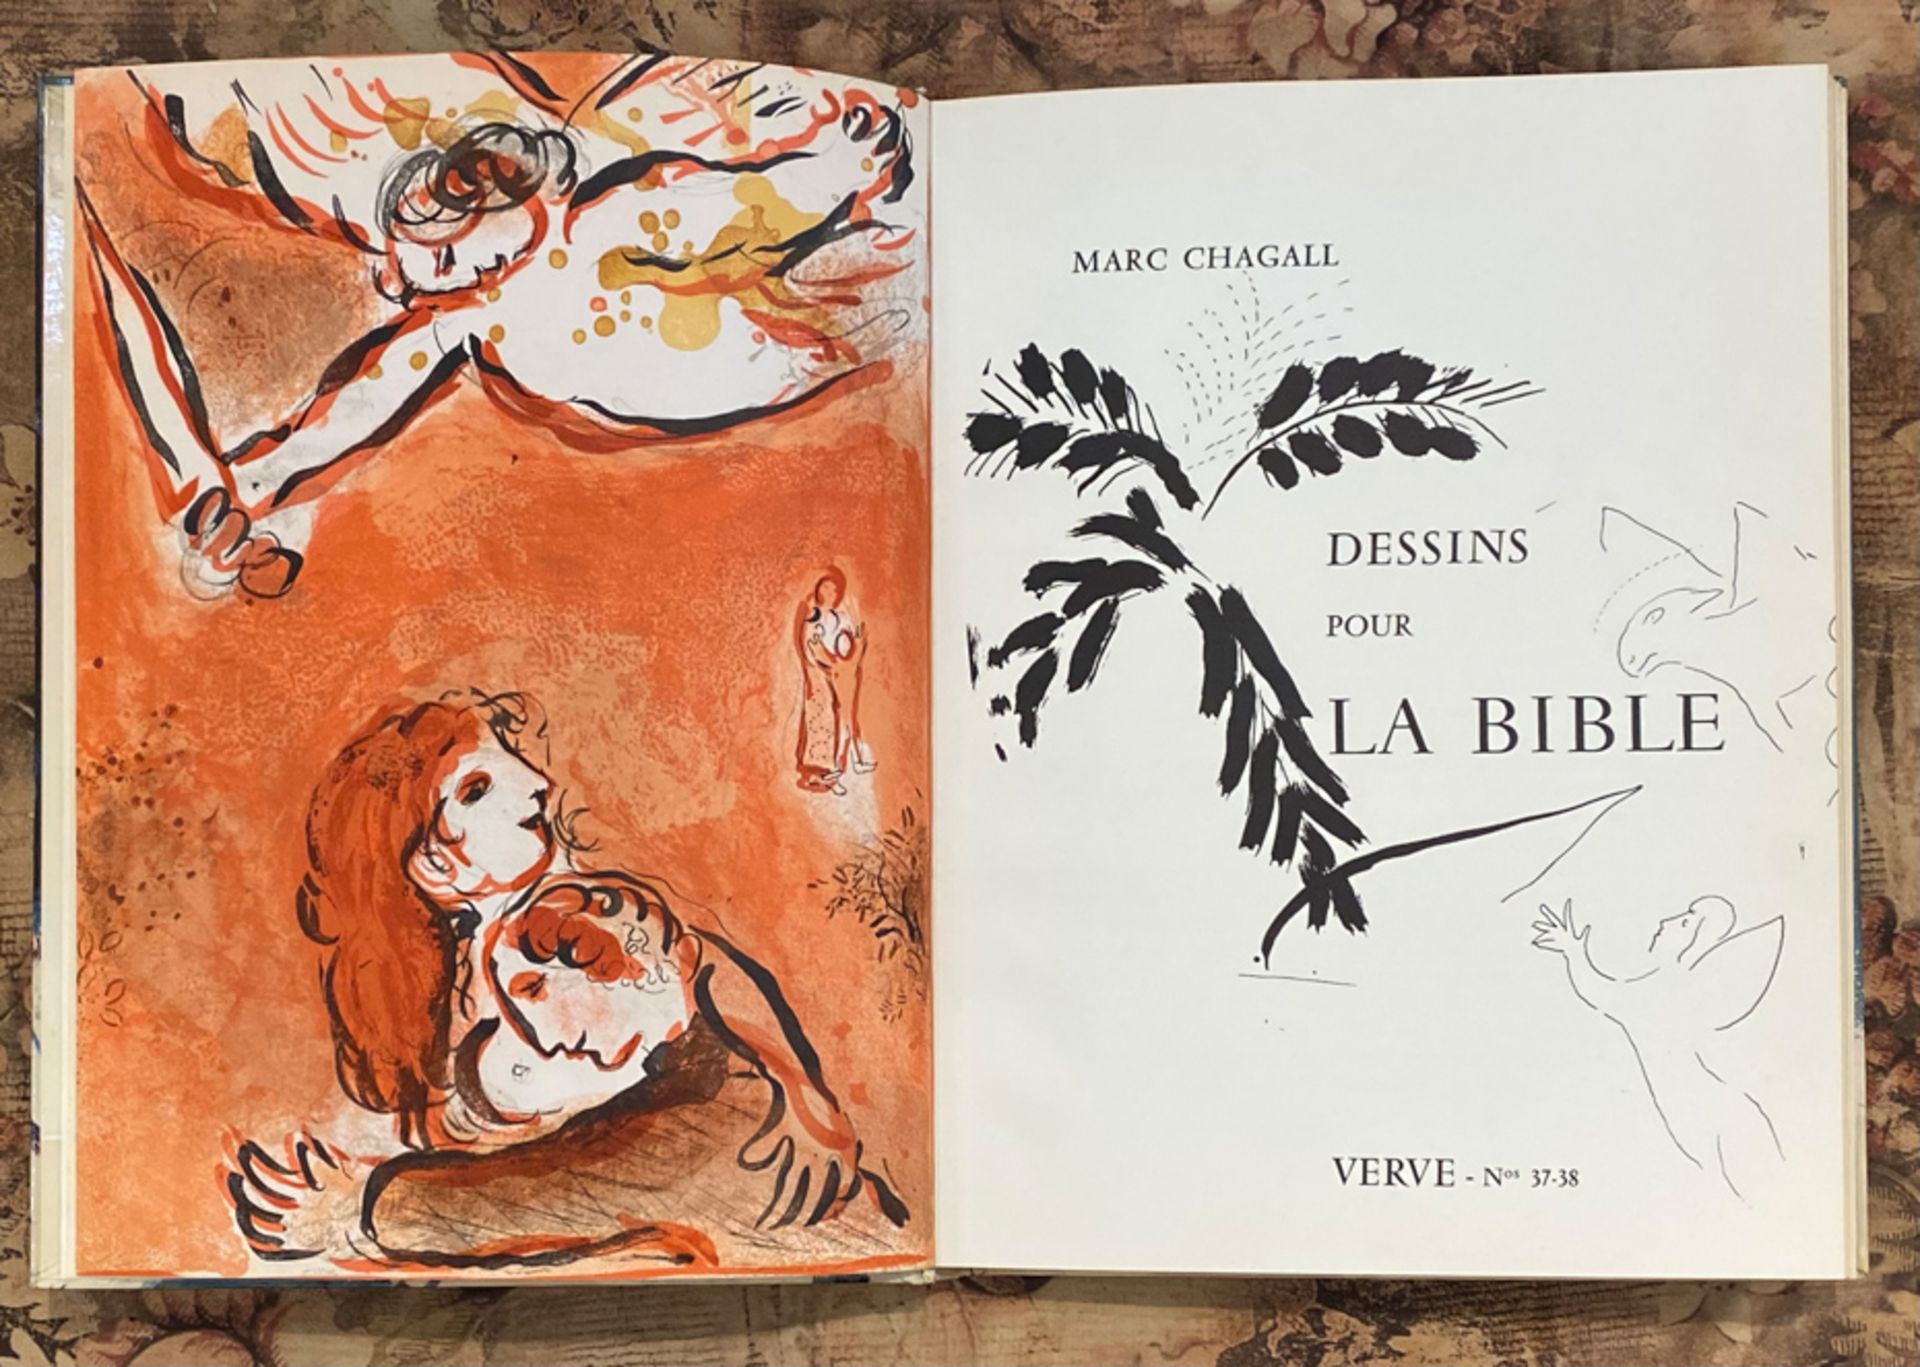 MARC CHAGALL: DESSINS POUR LA BIBLE. VERVE, NR. 37/38, PARIS, TÉRIADE ÉDITEUR, 1960 - Image 3 of 8